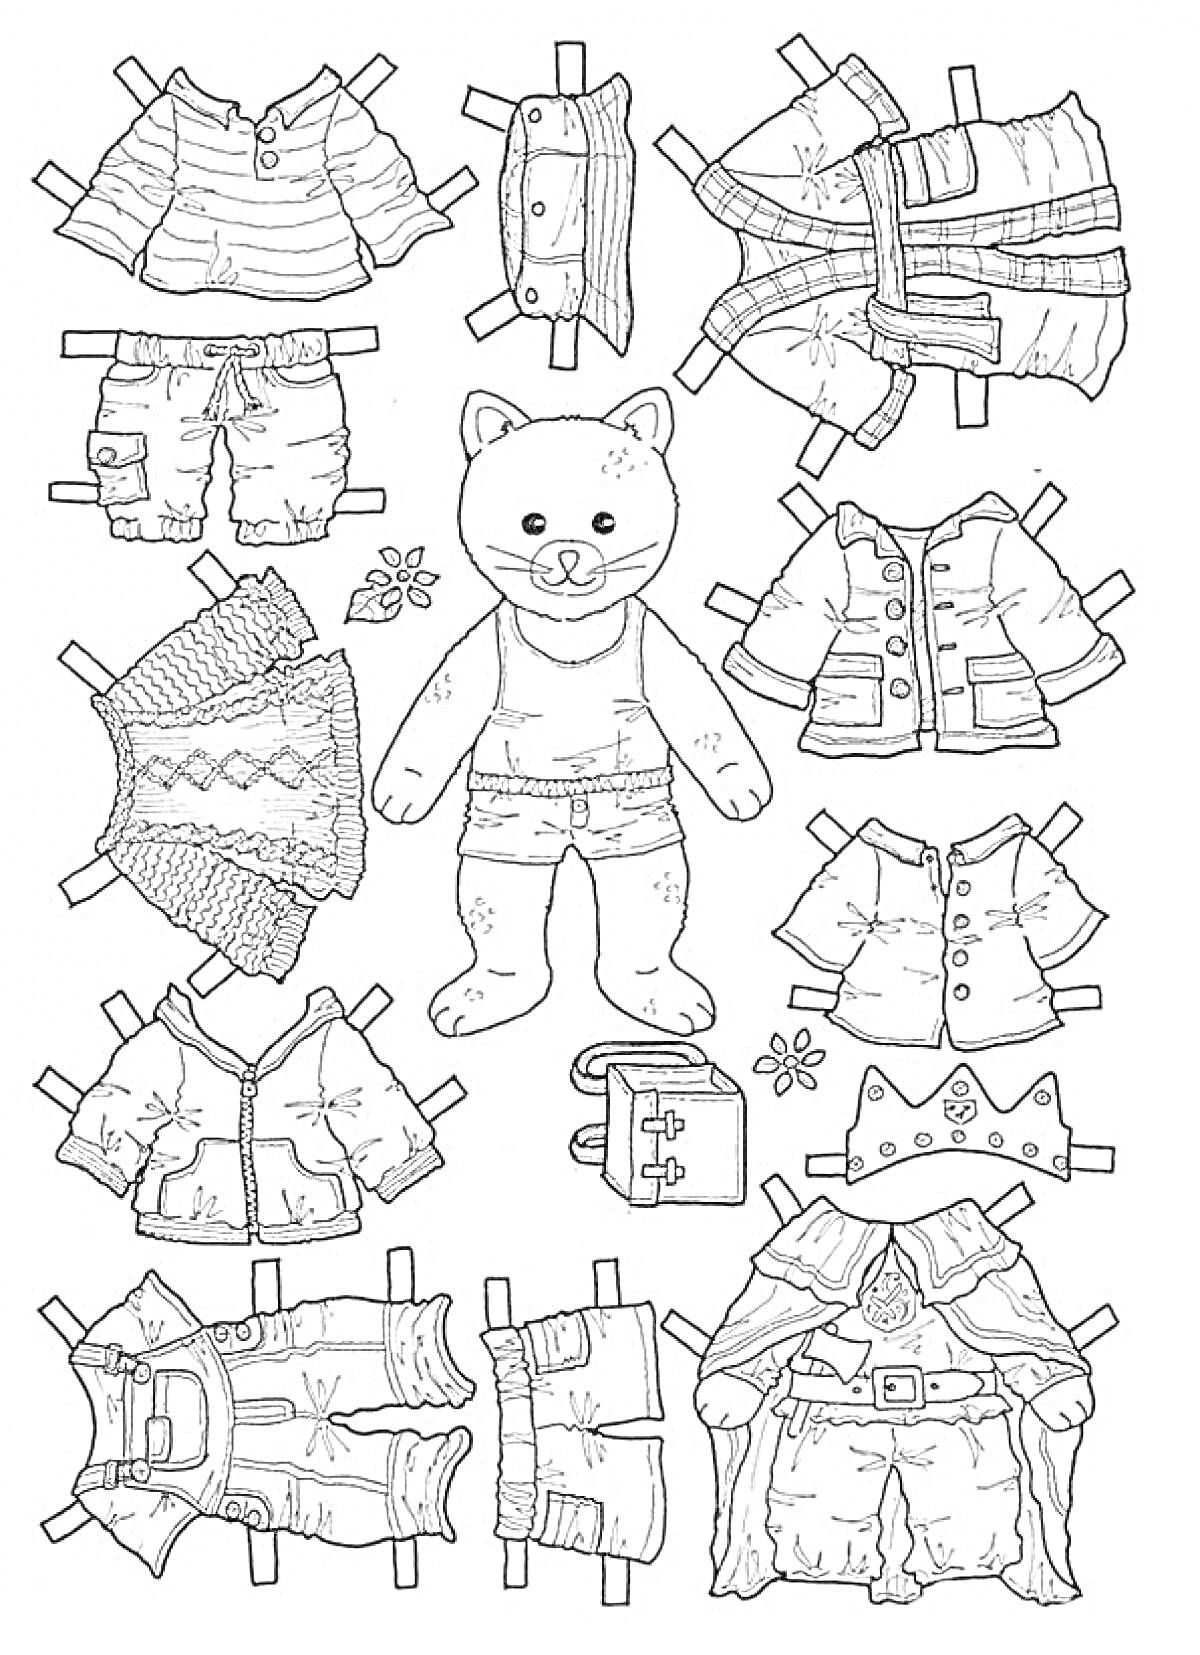 Раскраска Бумажная кукла - медведь с разнообразной одеждой (жилетка, рубашка, шорты, плащ, куртка, акссесуары)